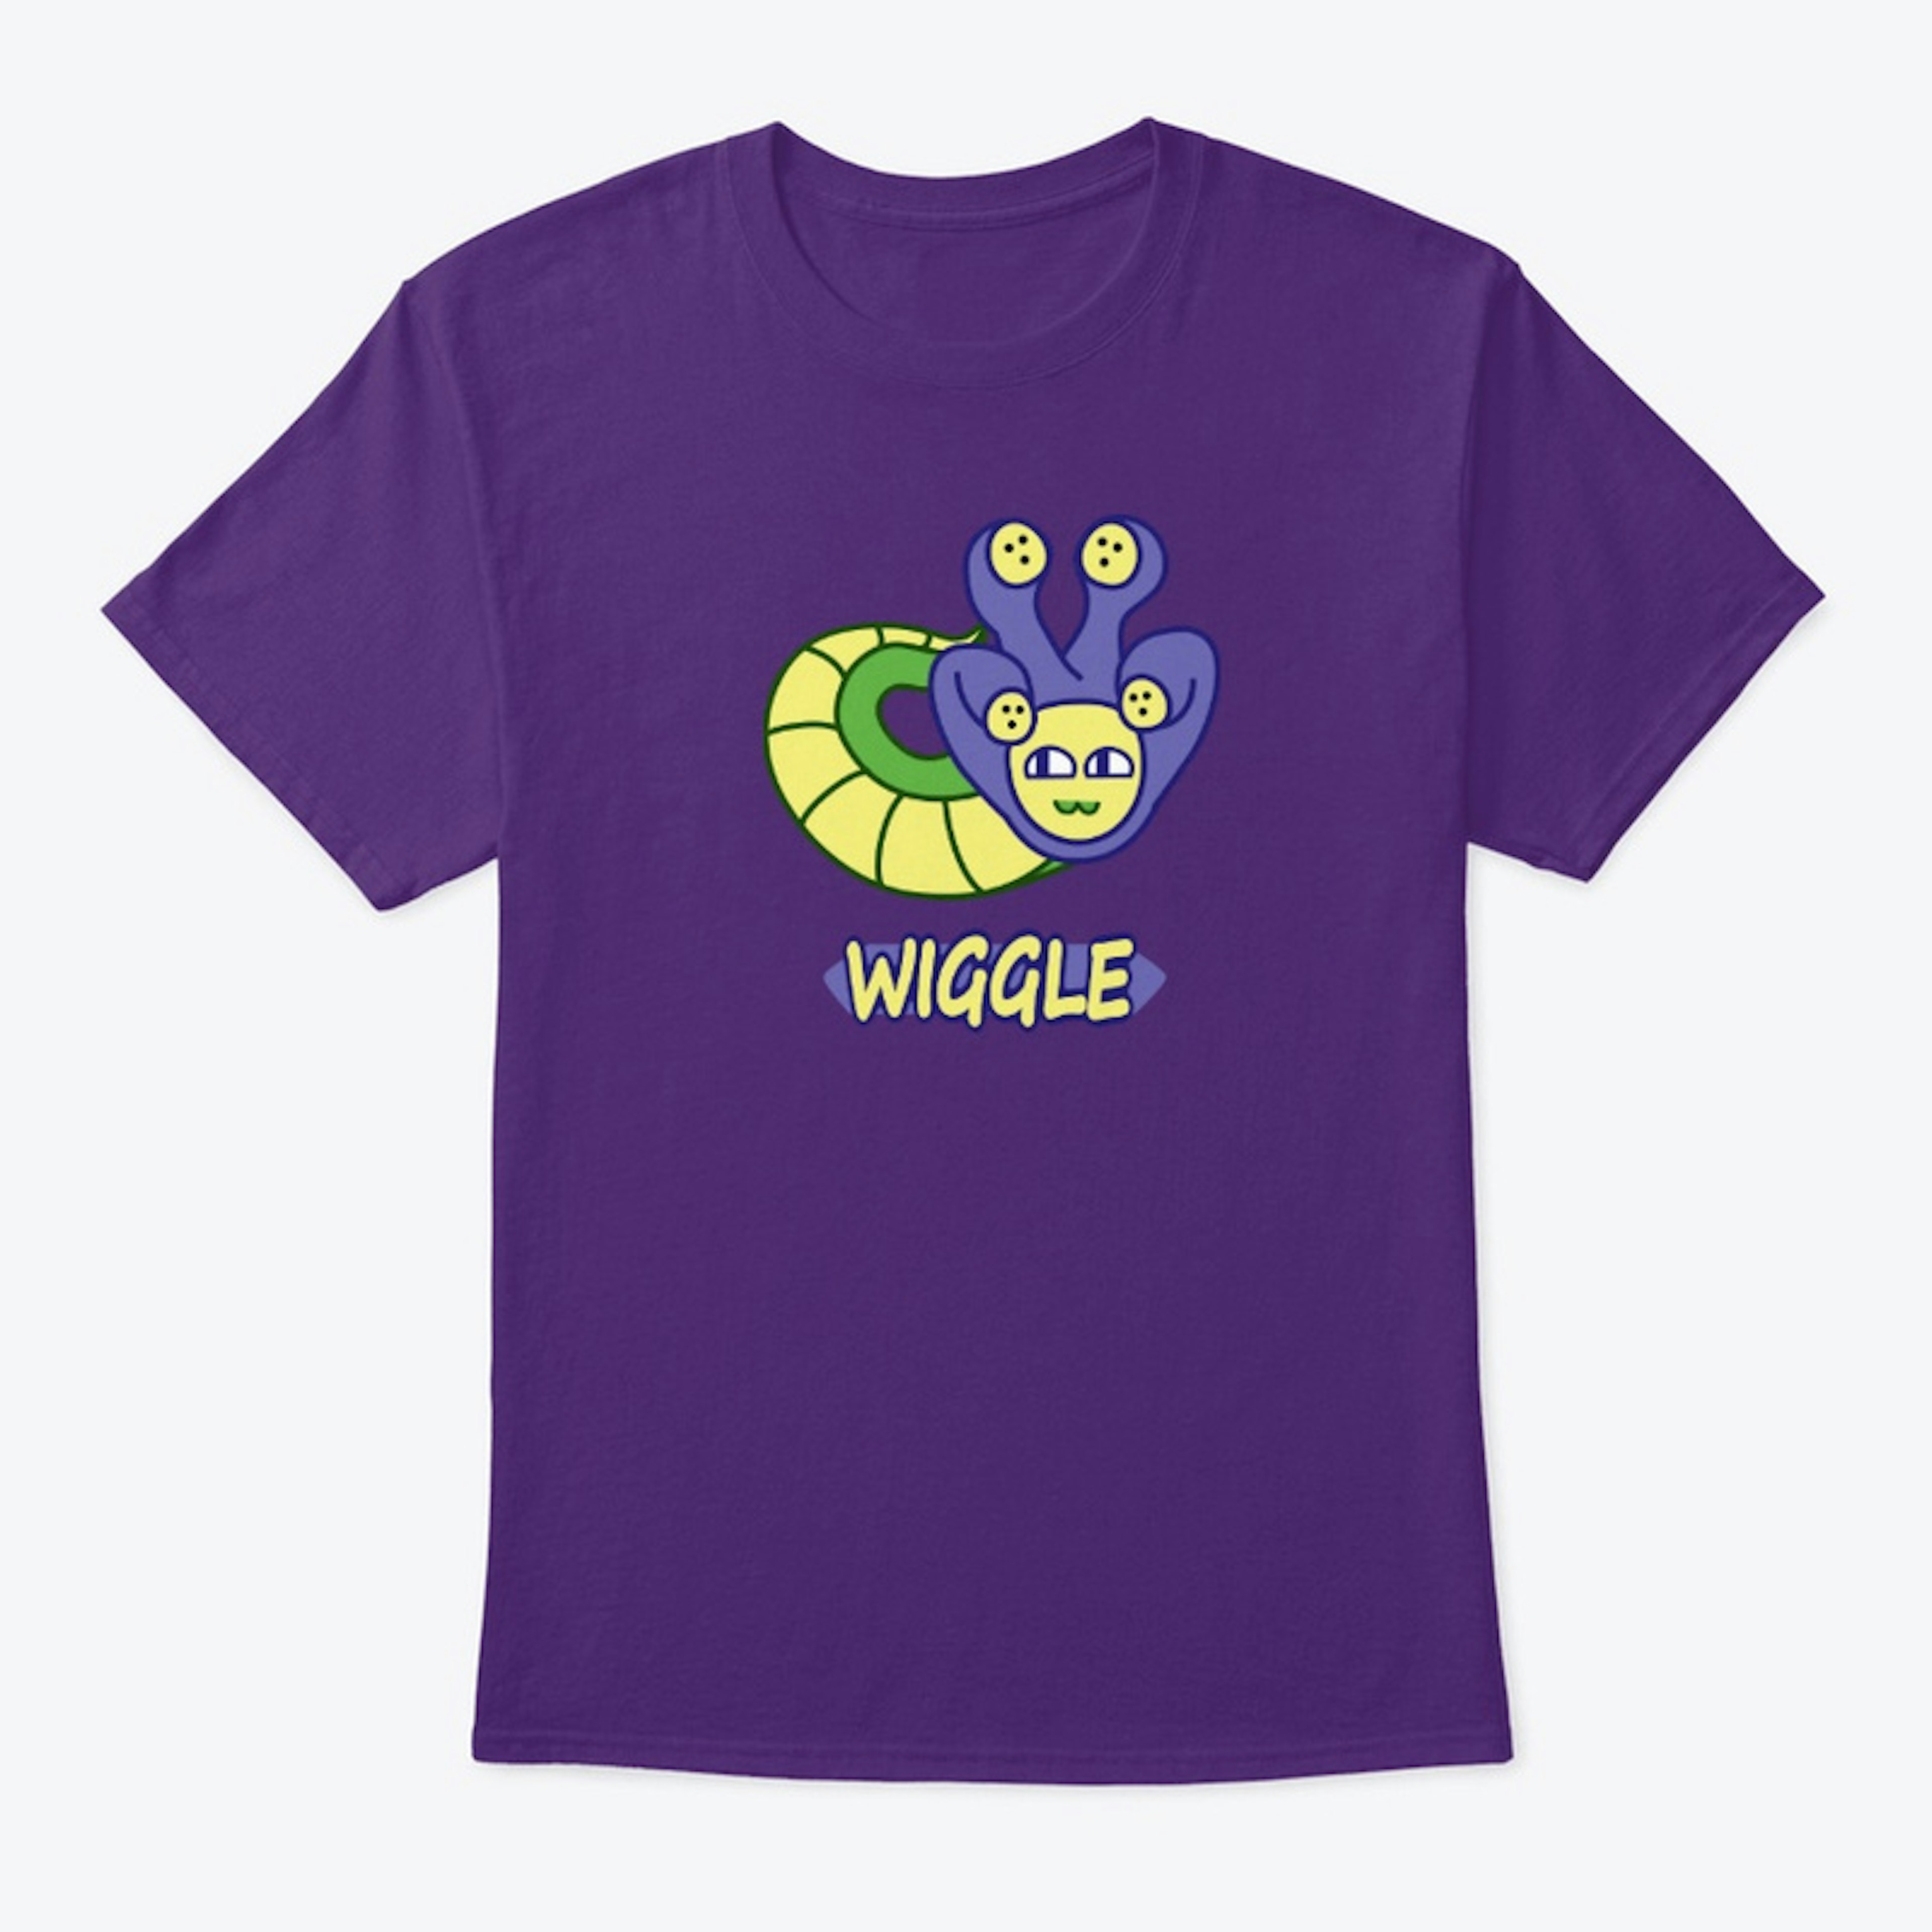 Wiggle shirt + Logo on back